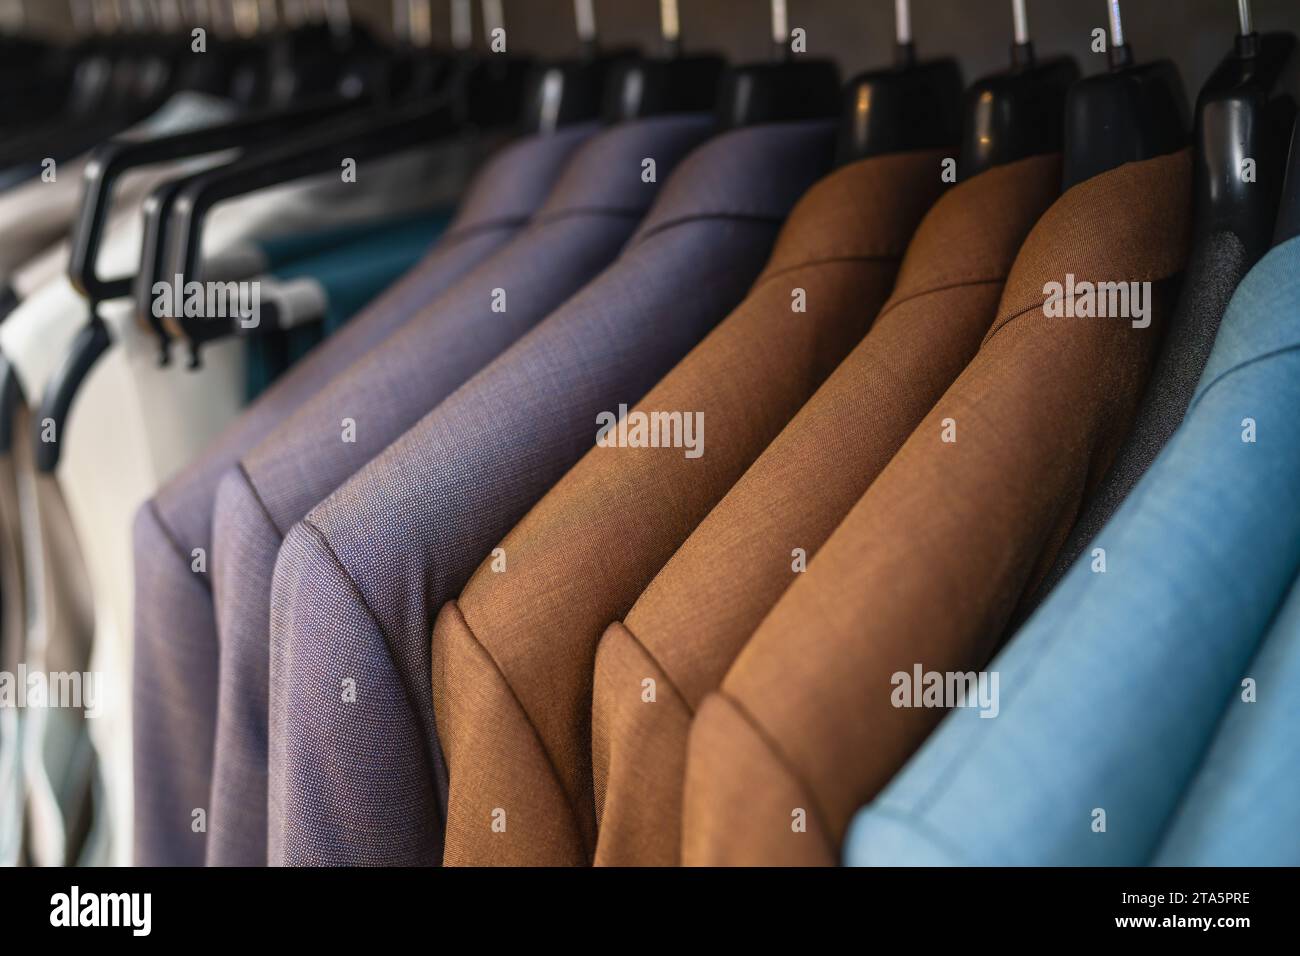 Reihe von Anzügen auf Kleiderbügeln, verschiedene Braun- und Blautöne, formelle Kleidung in einem Geschäft Stockfoto